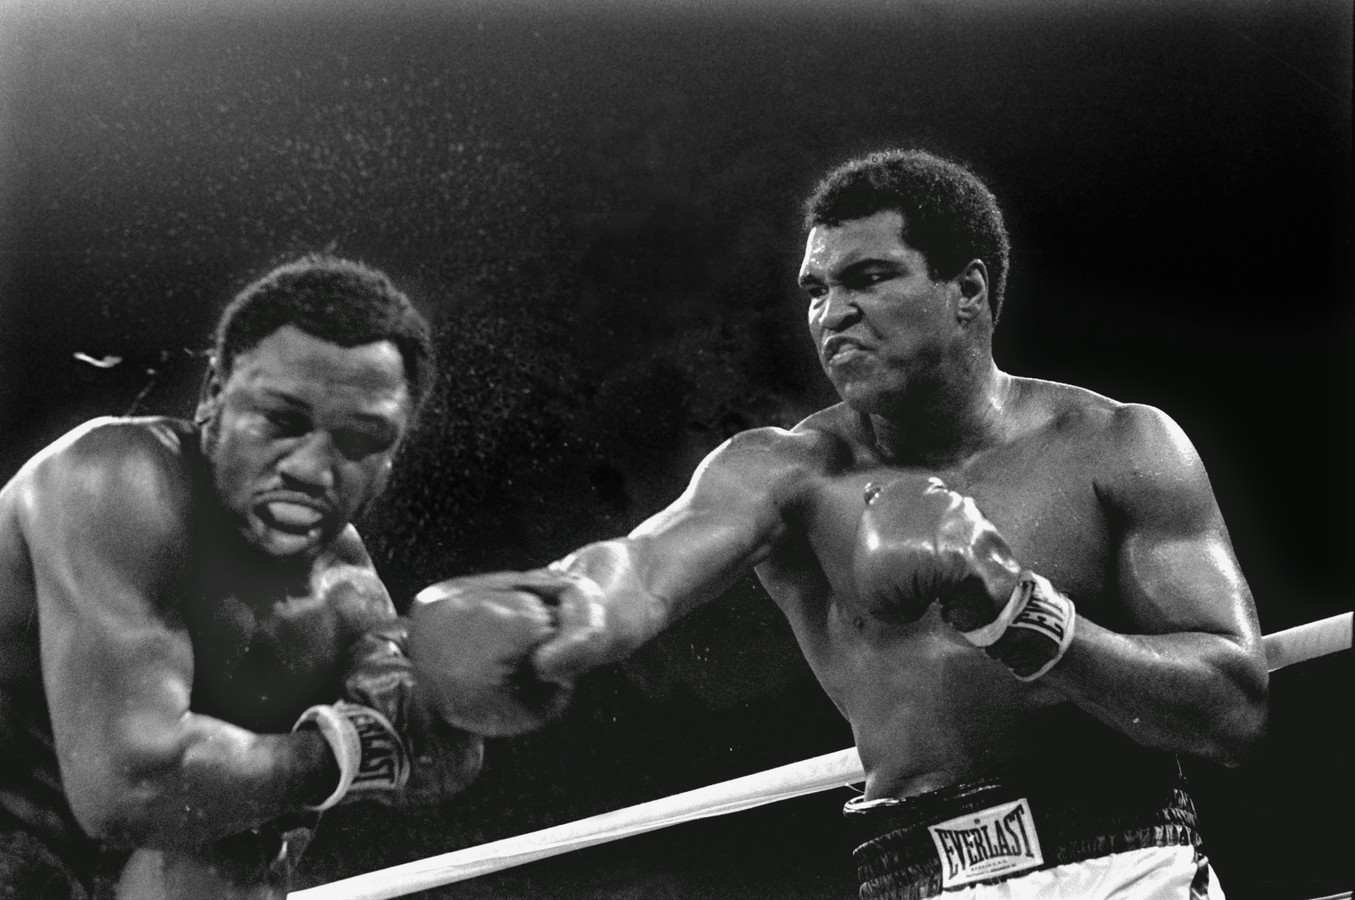 De legendarische wereldkampioen boksen in het zwaargewicht Muhammad Ali in het beroemde gevecht tegen uitdager Joe Frazier in Manila in 1975. Ali hield de titel.